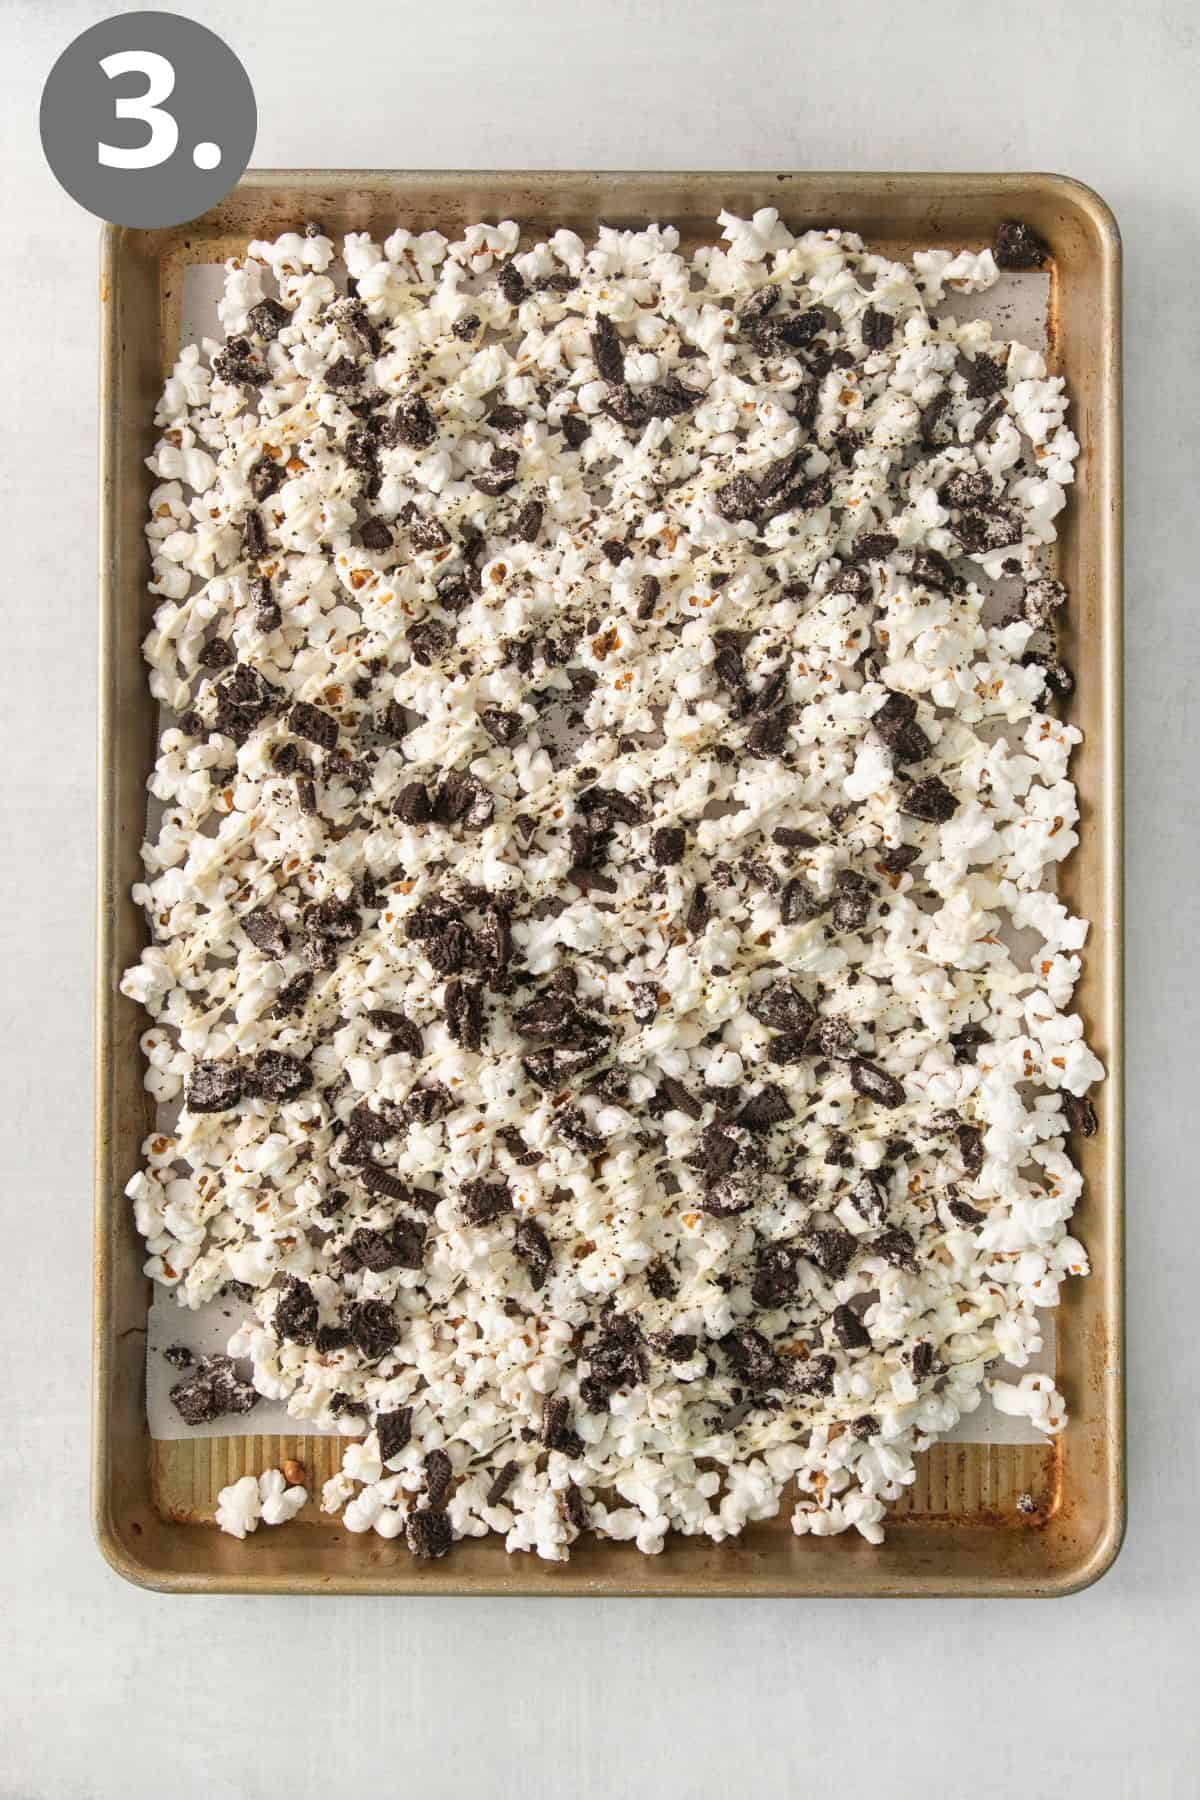 Oreo popcorn spread on a baking tray